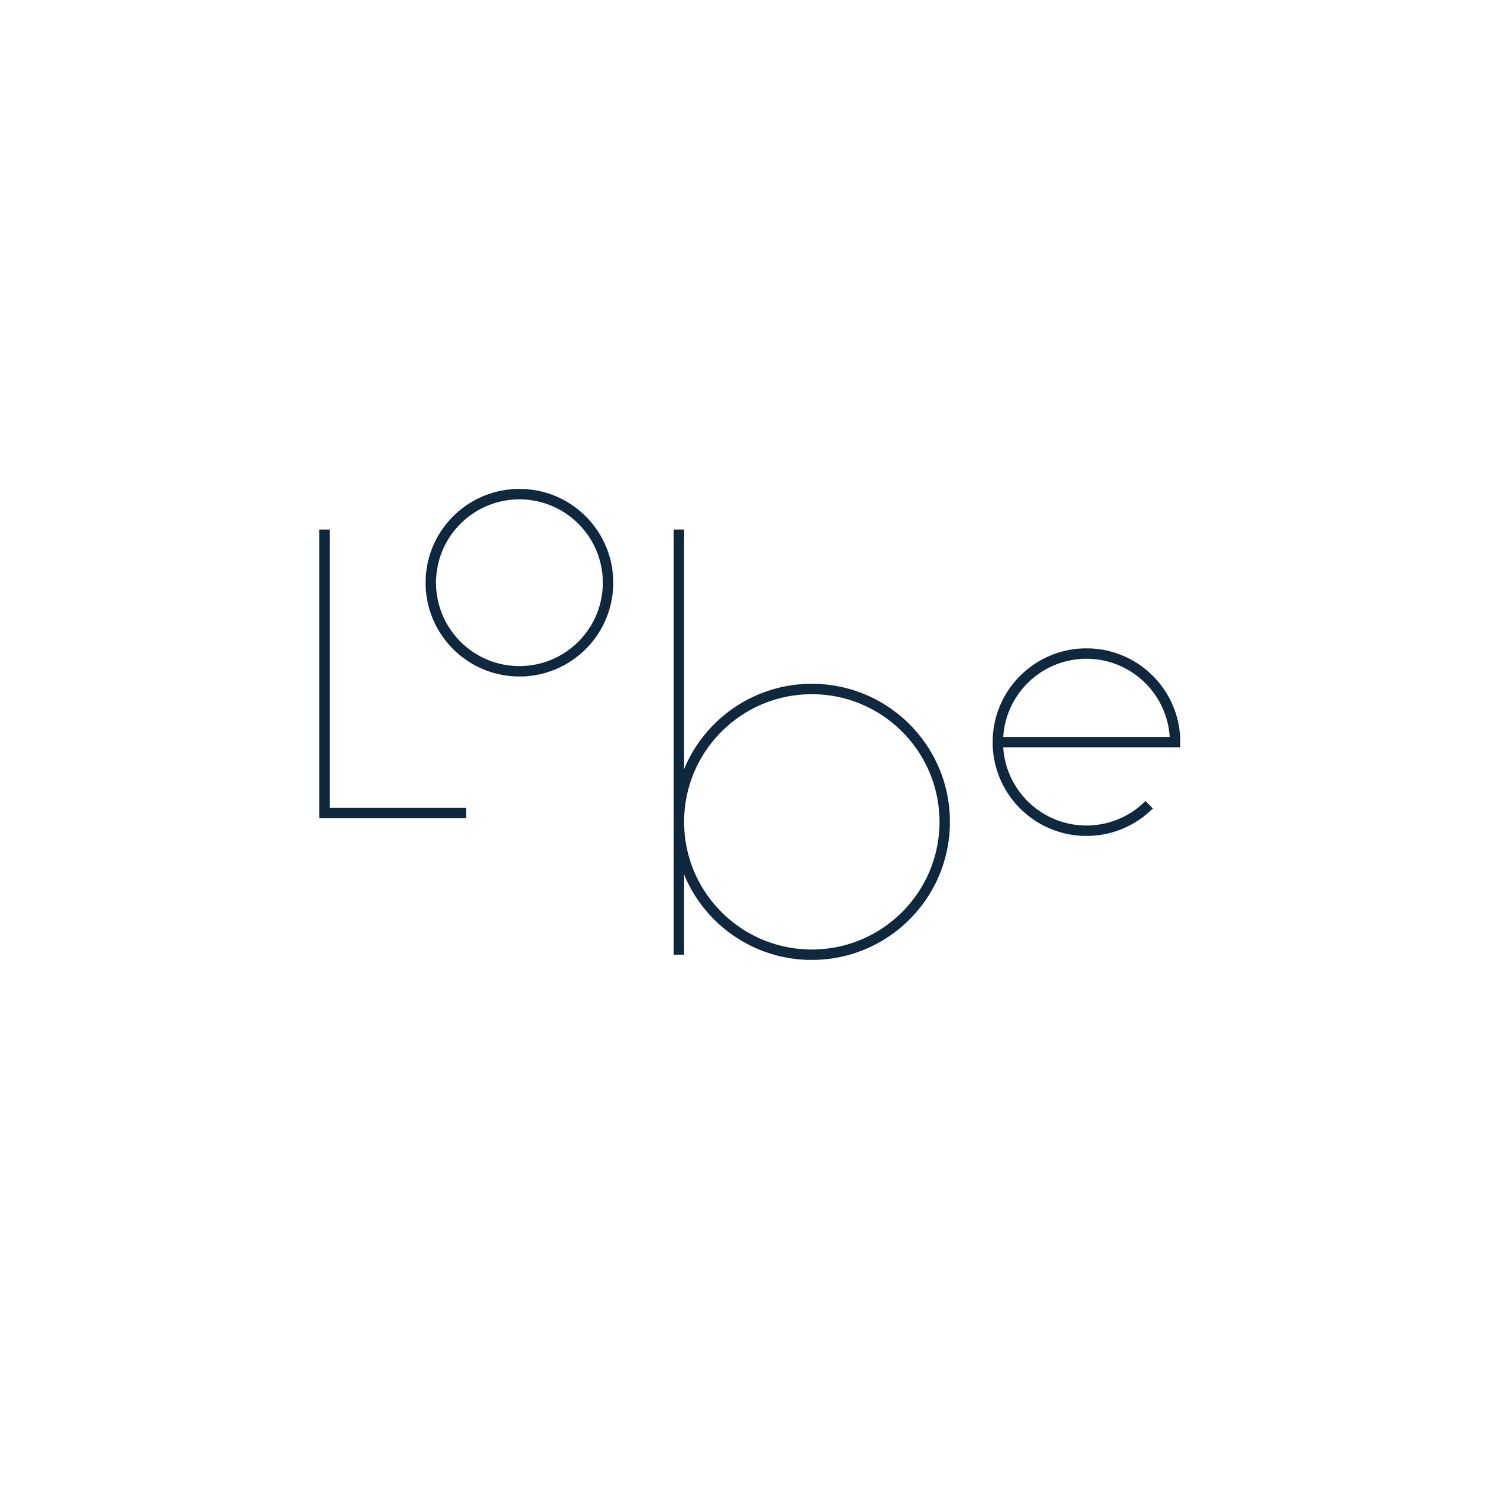 Lobe’s